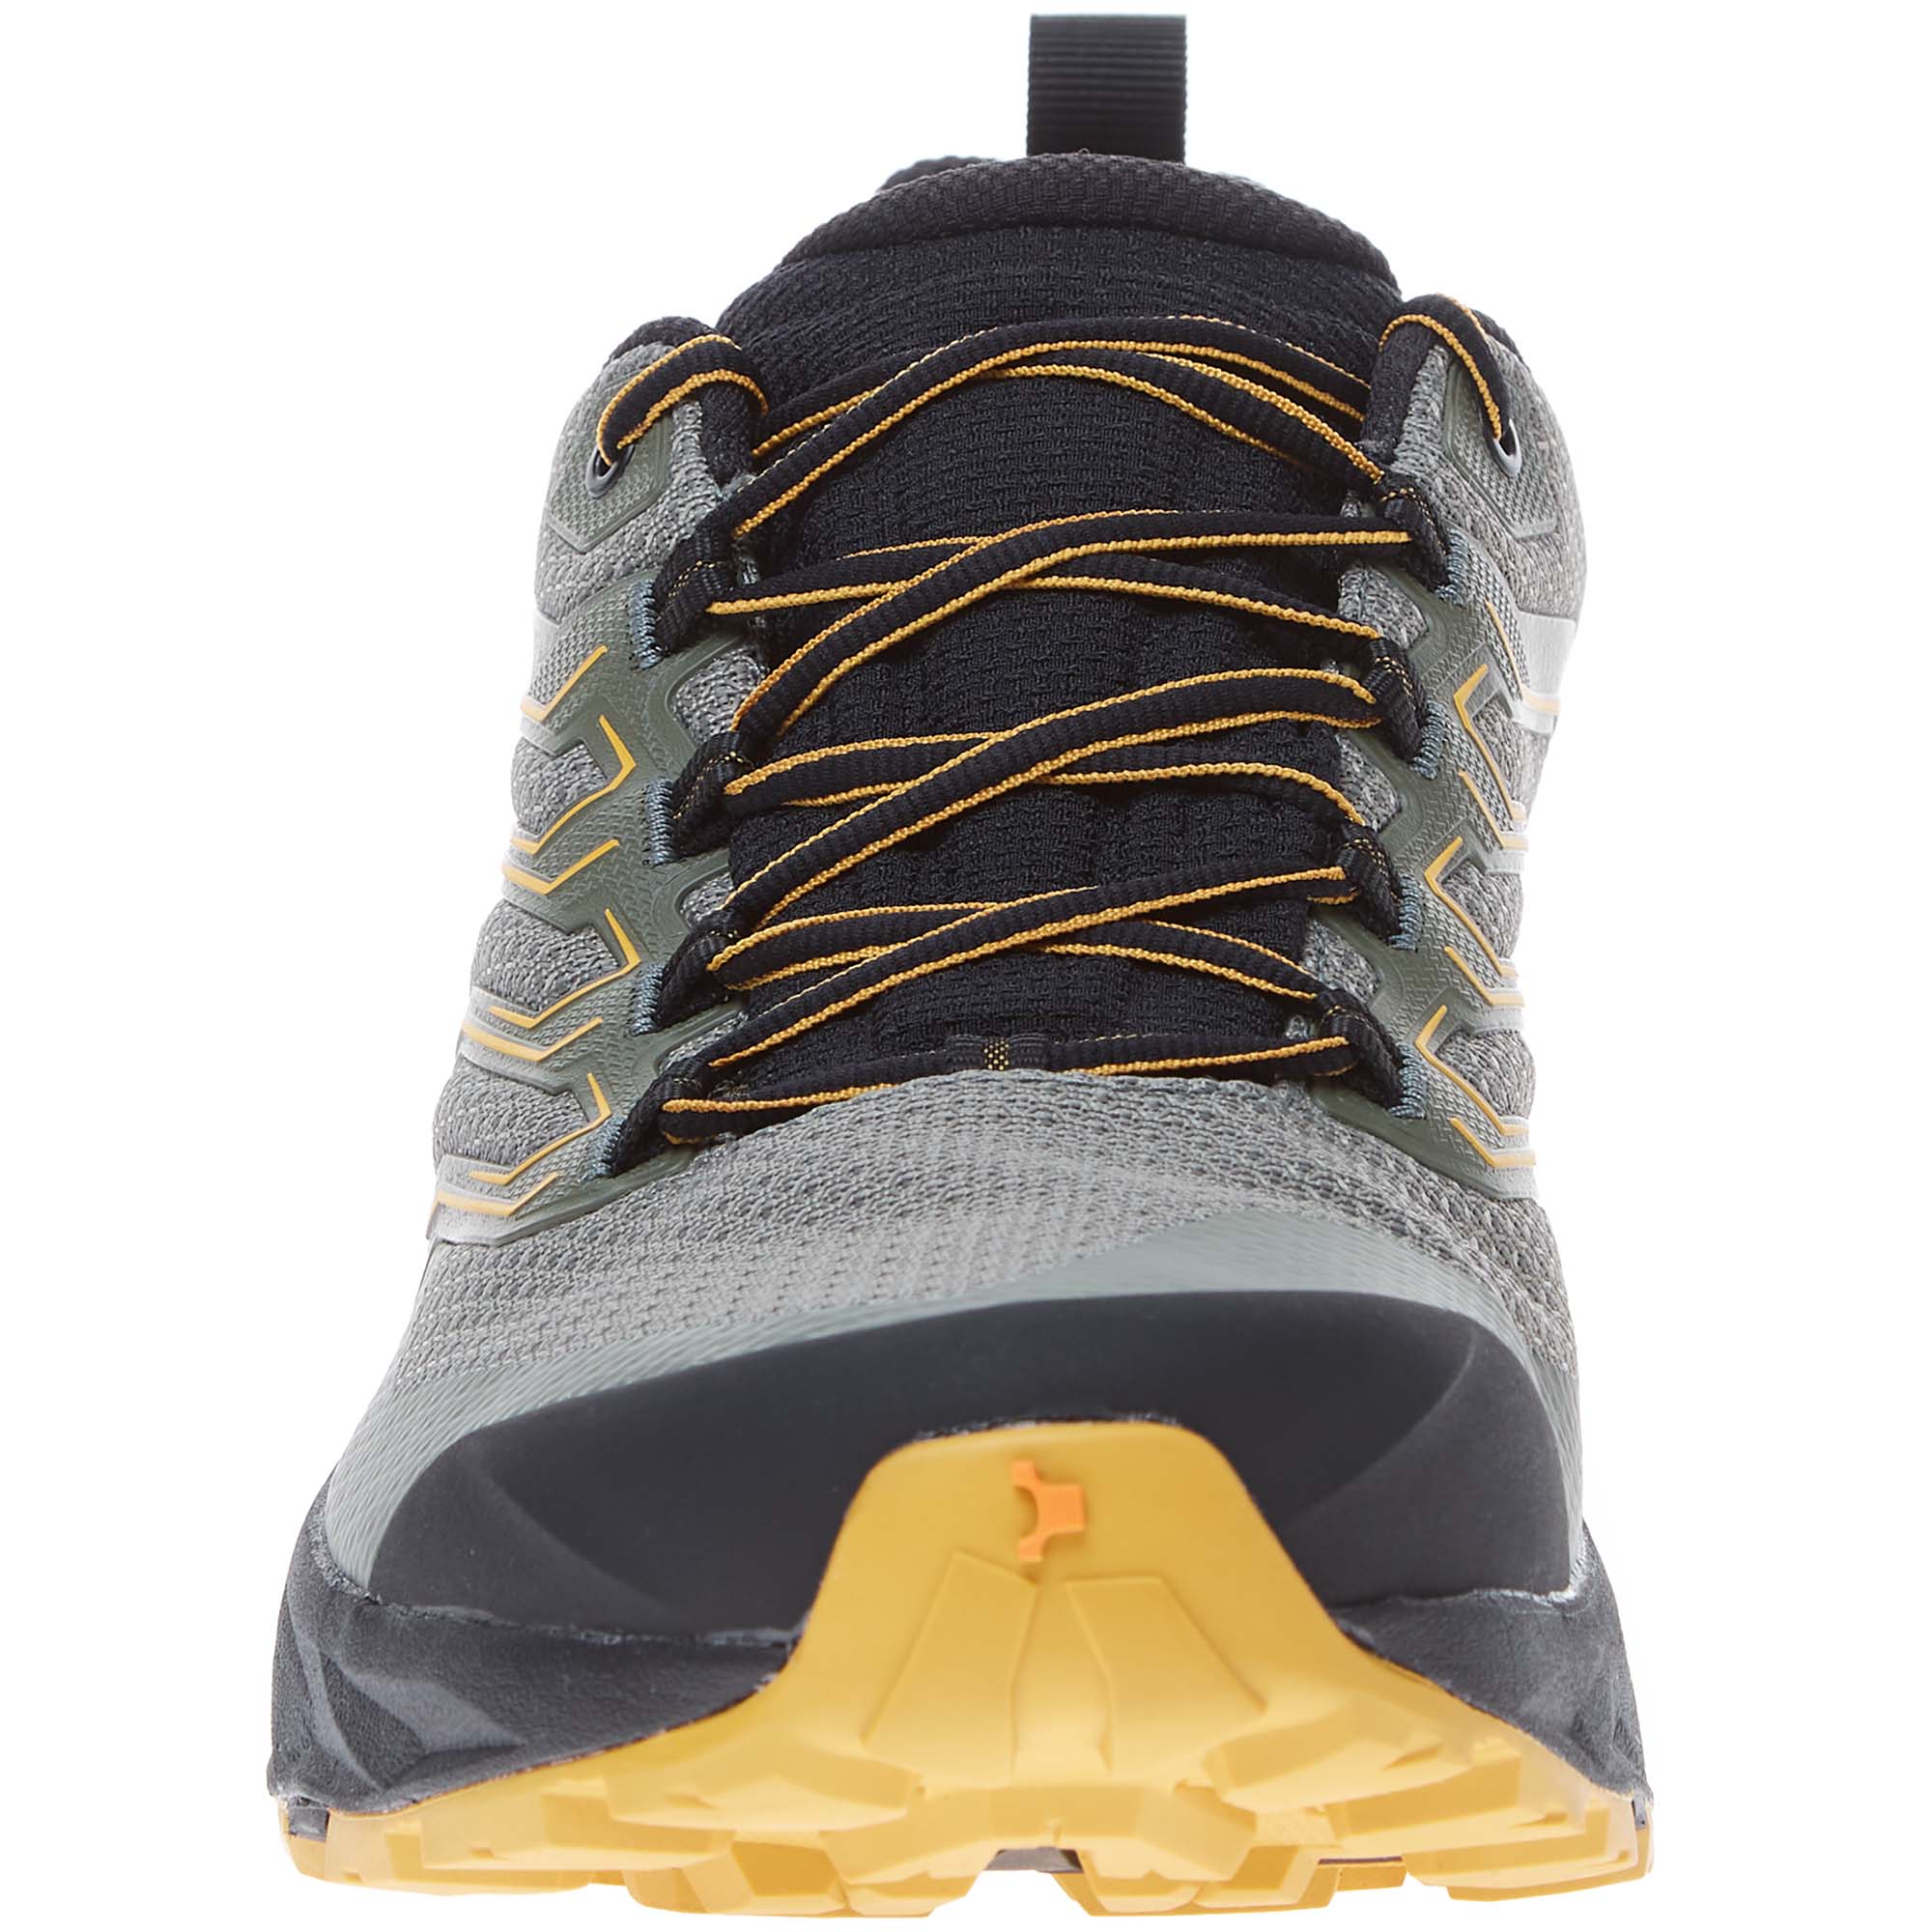 Scarpa Rush GTX 2 Hiking/Walking Shoes 